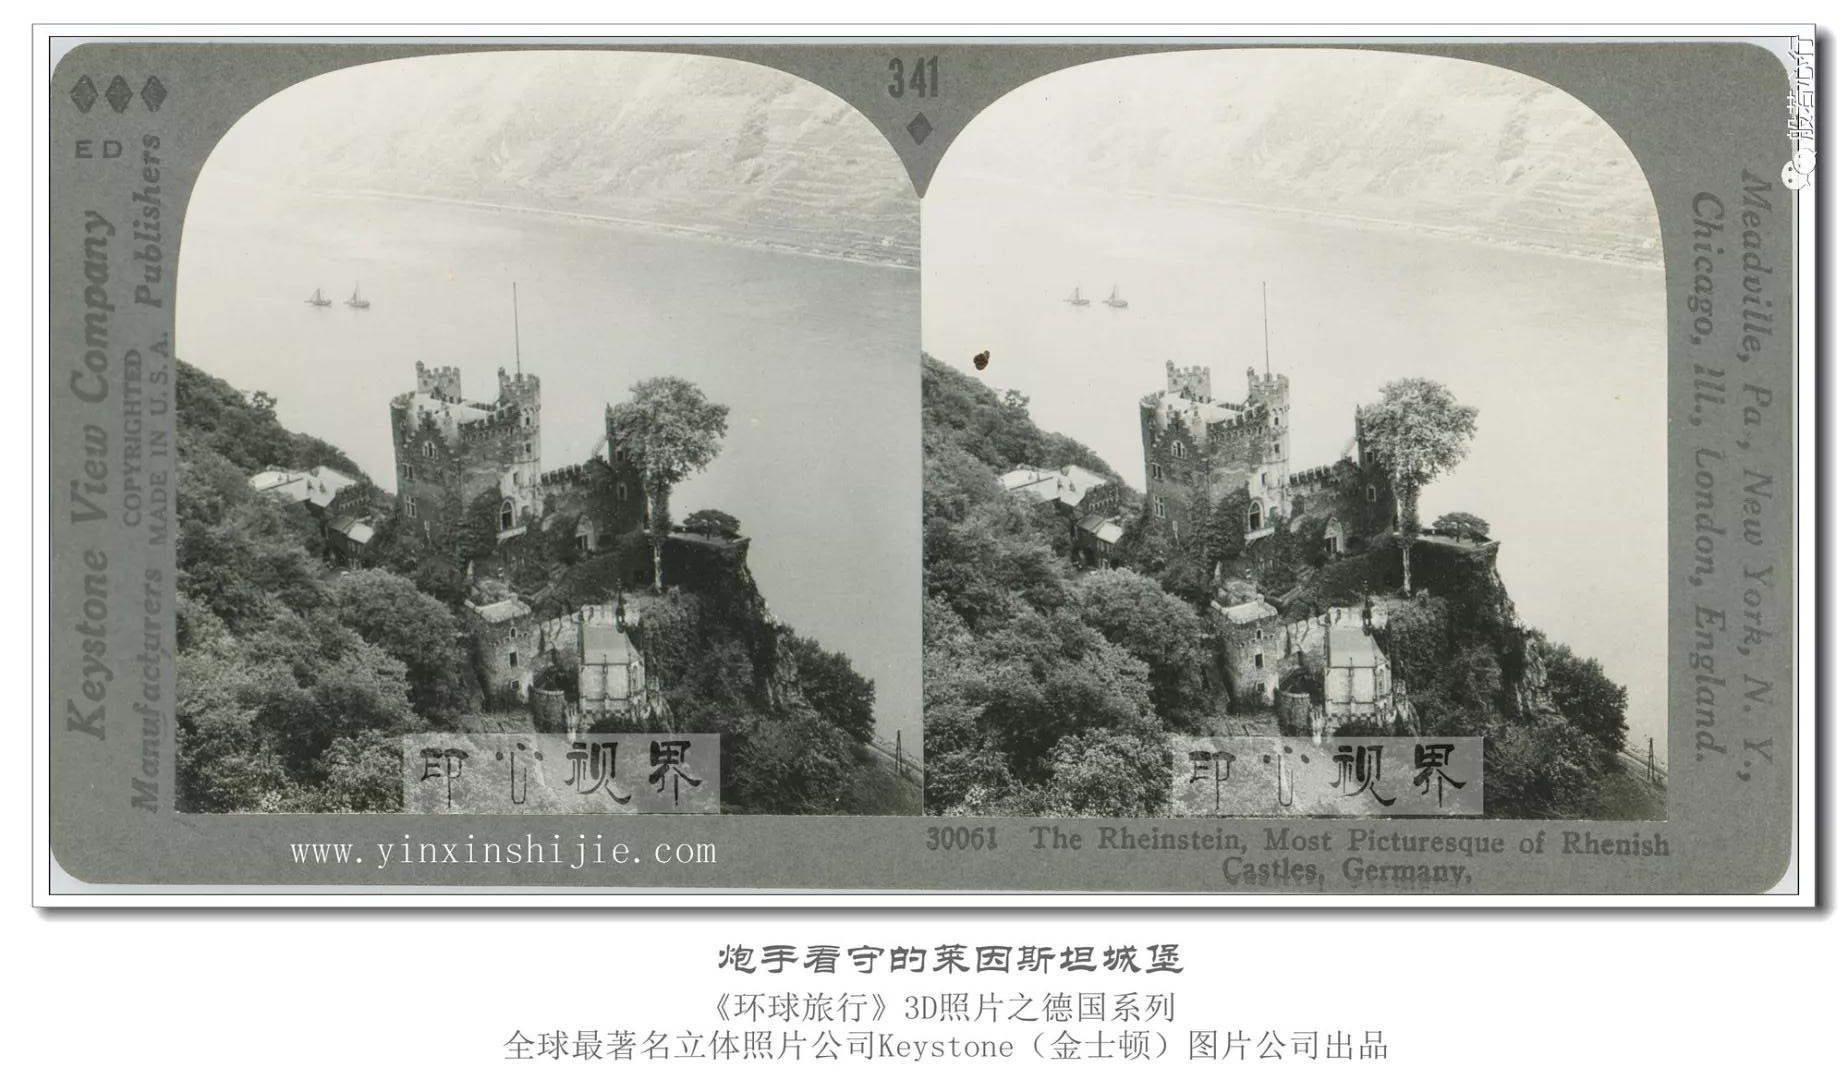 炮手看守的莱茵斯坦城堡-1936年3D版《环球旅行》立体照片